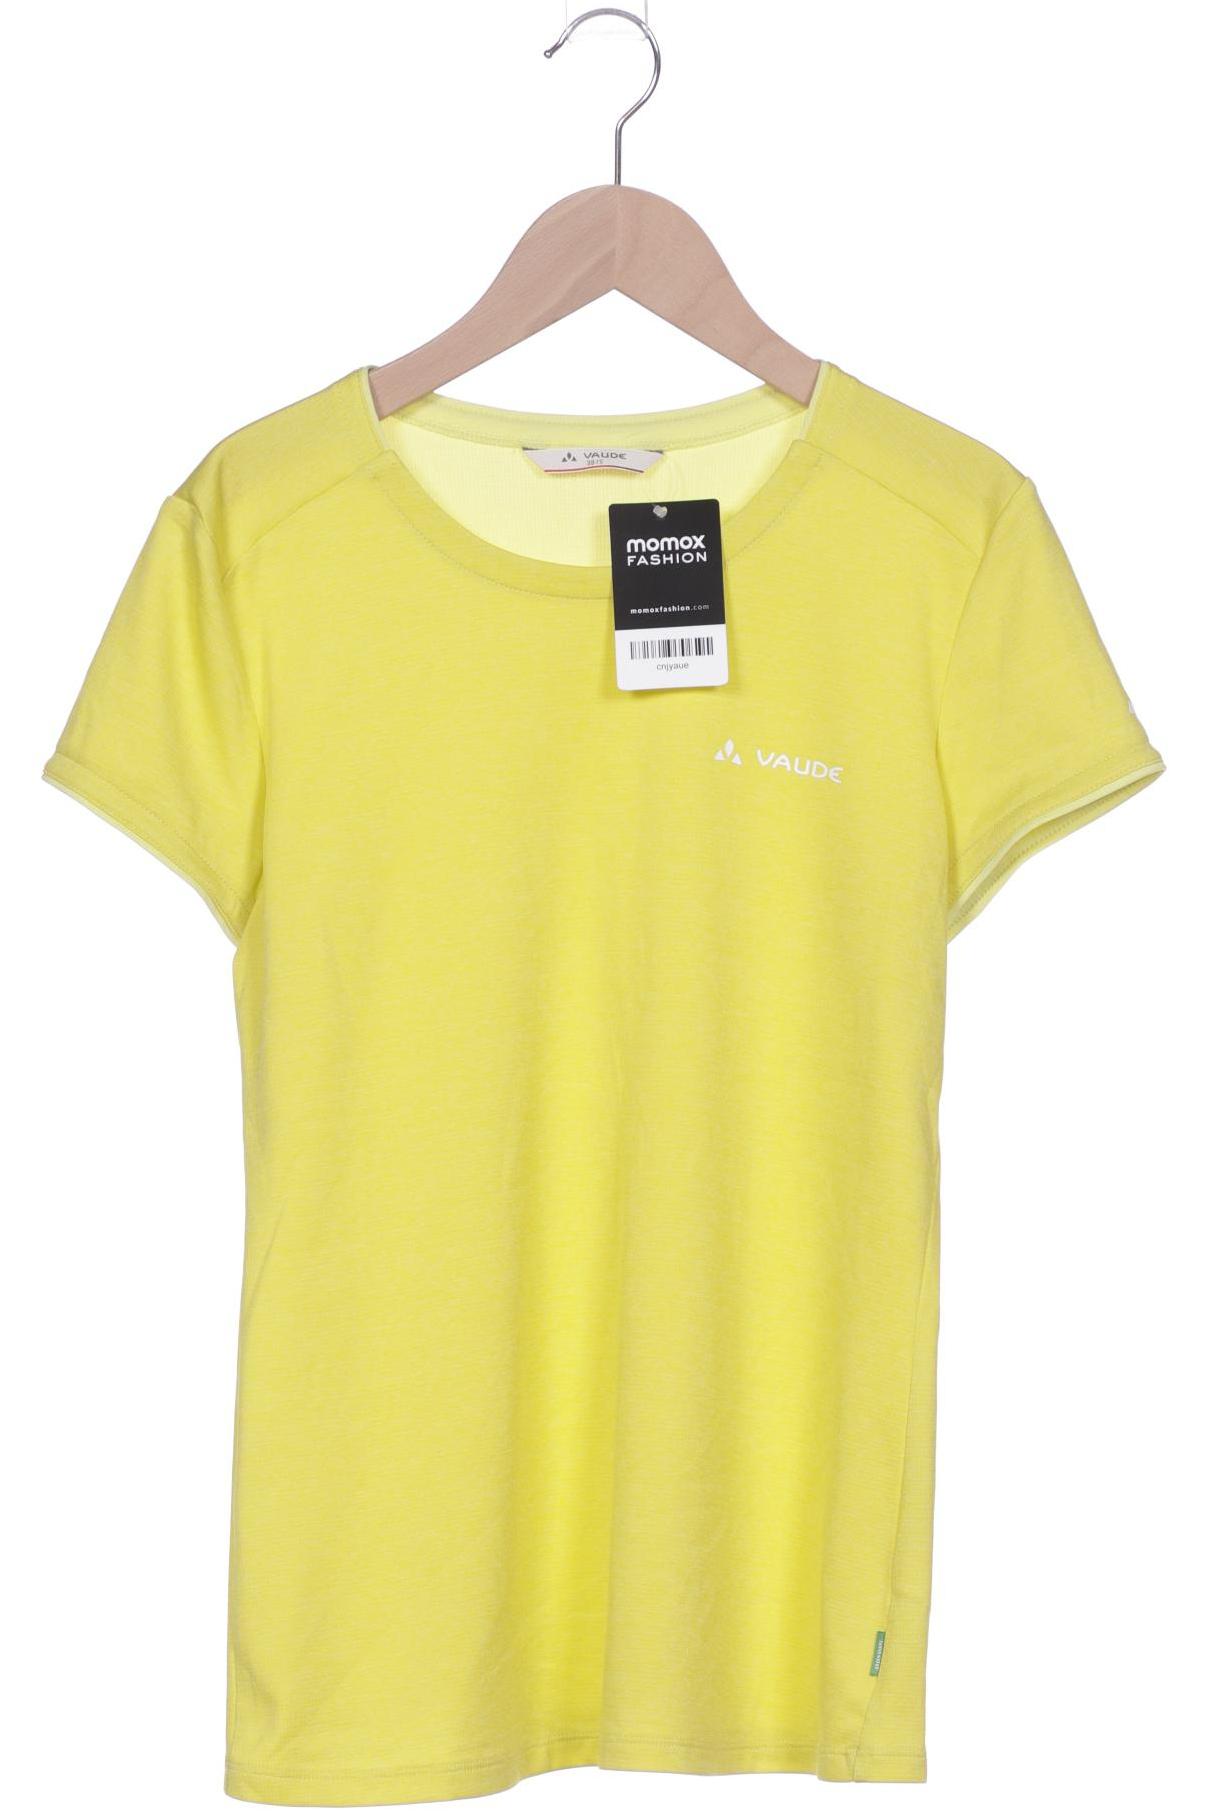 Vaude Damen T-Shirt, gelb, Gr. 38 von Vaude